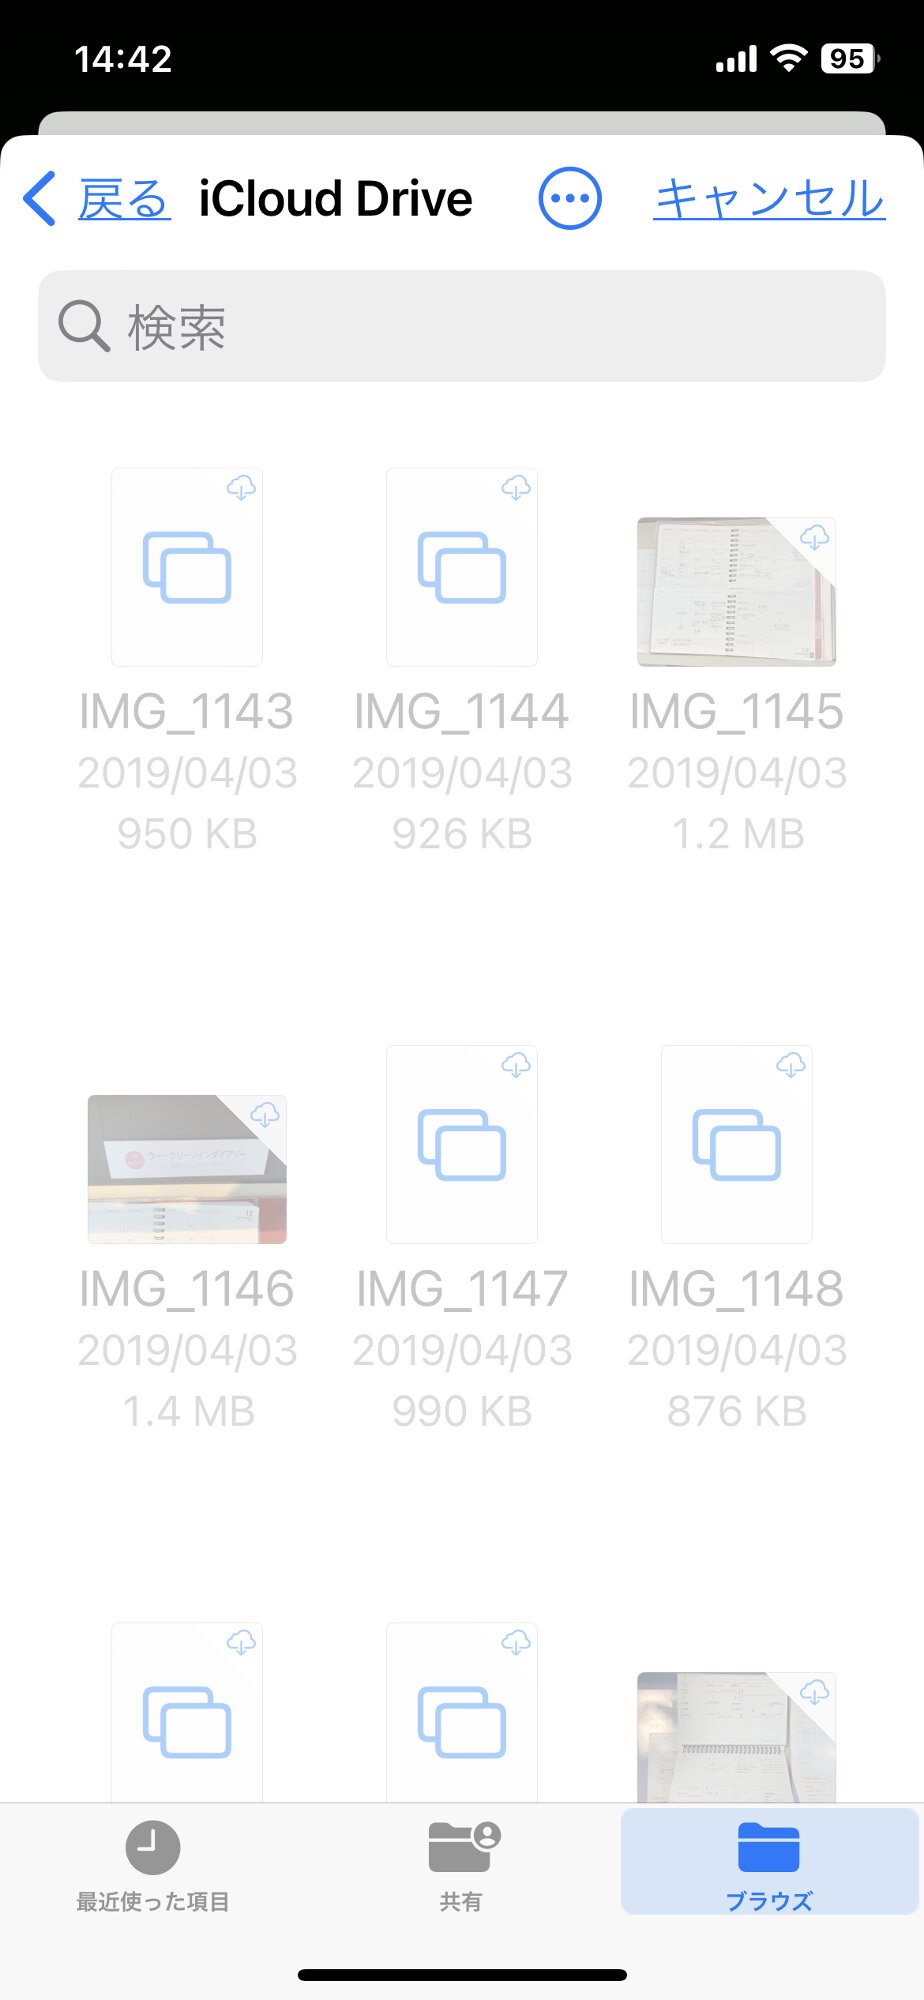 書類選択の画面。iCloudDriveが表示されているが、画面左上の「戻る」をタップする